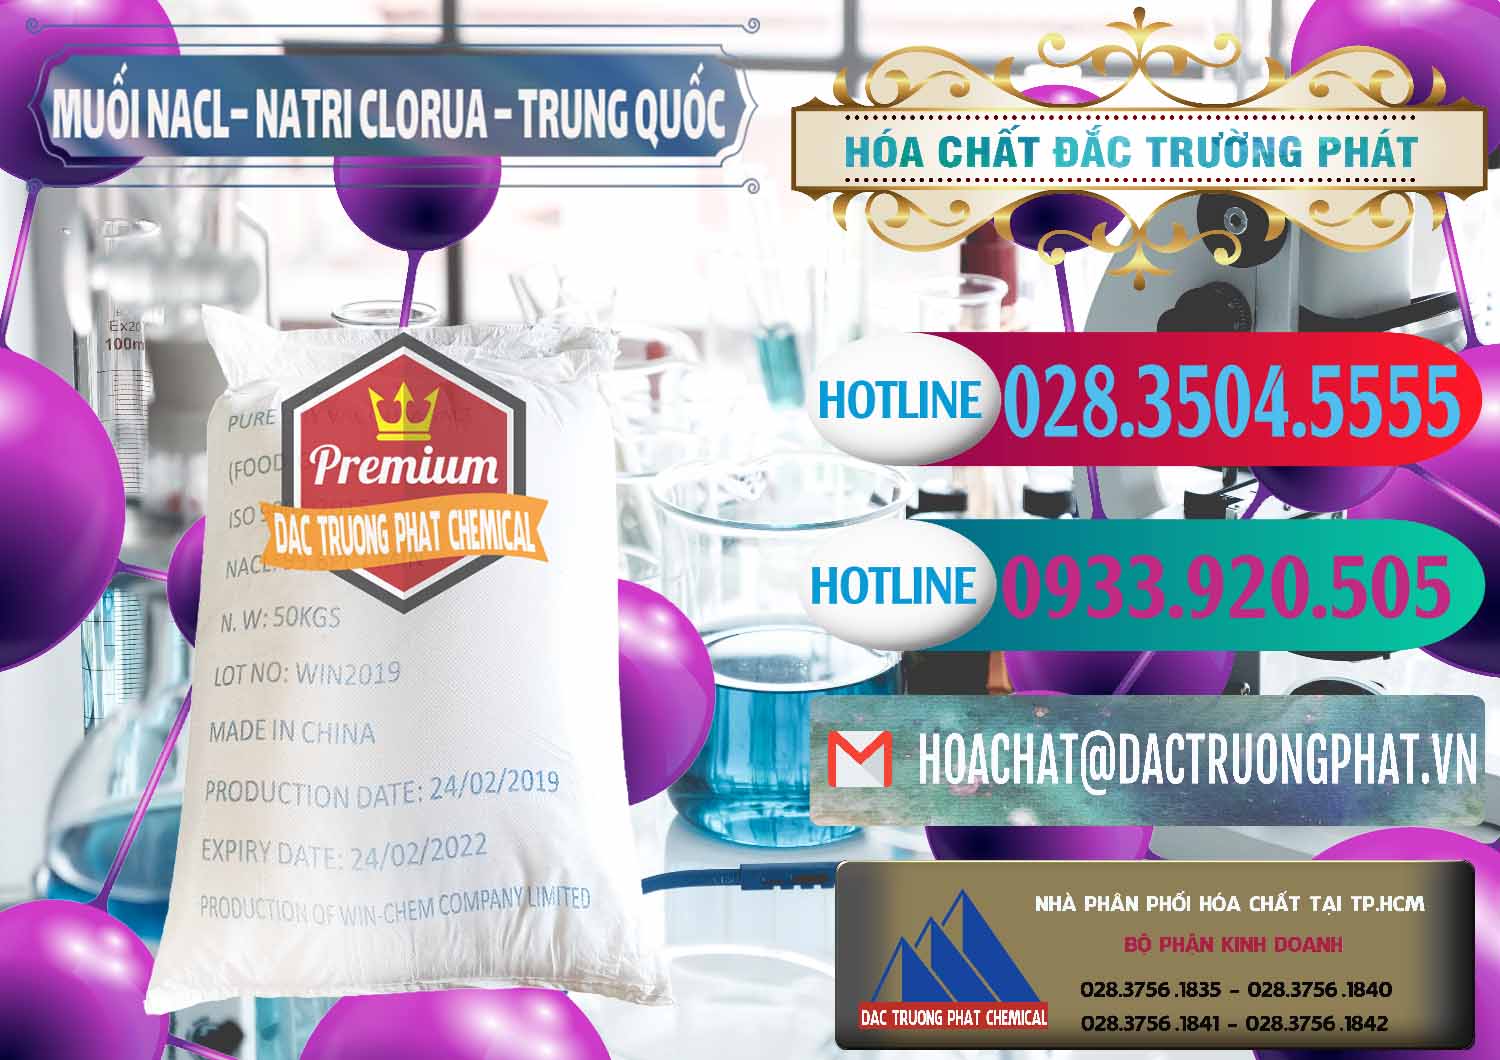 Công ty kinh doanh và bán Muối NaCL – Sodium Chloride Trung Quốc China - 0097 - Chuyên phân phối ( kinh doanh ) hóa chất tại TP.HCM - truongphat.vn